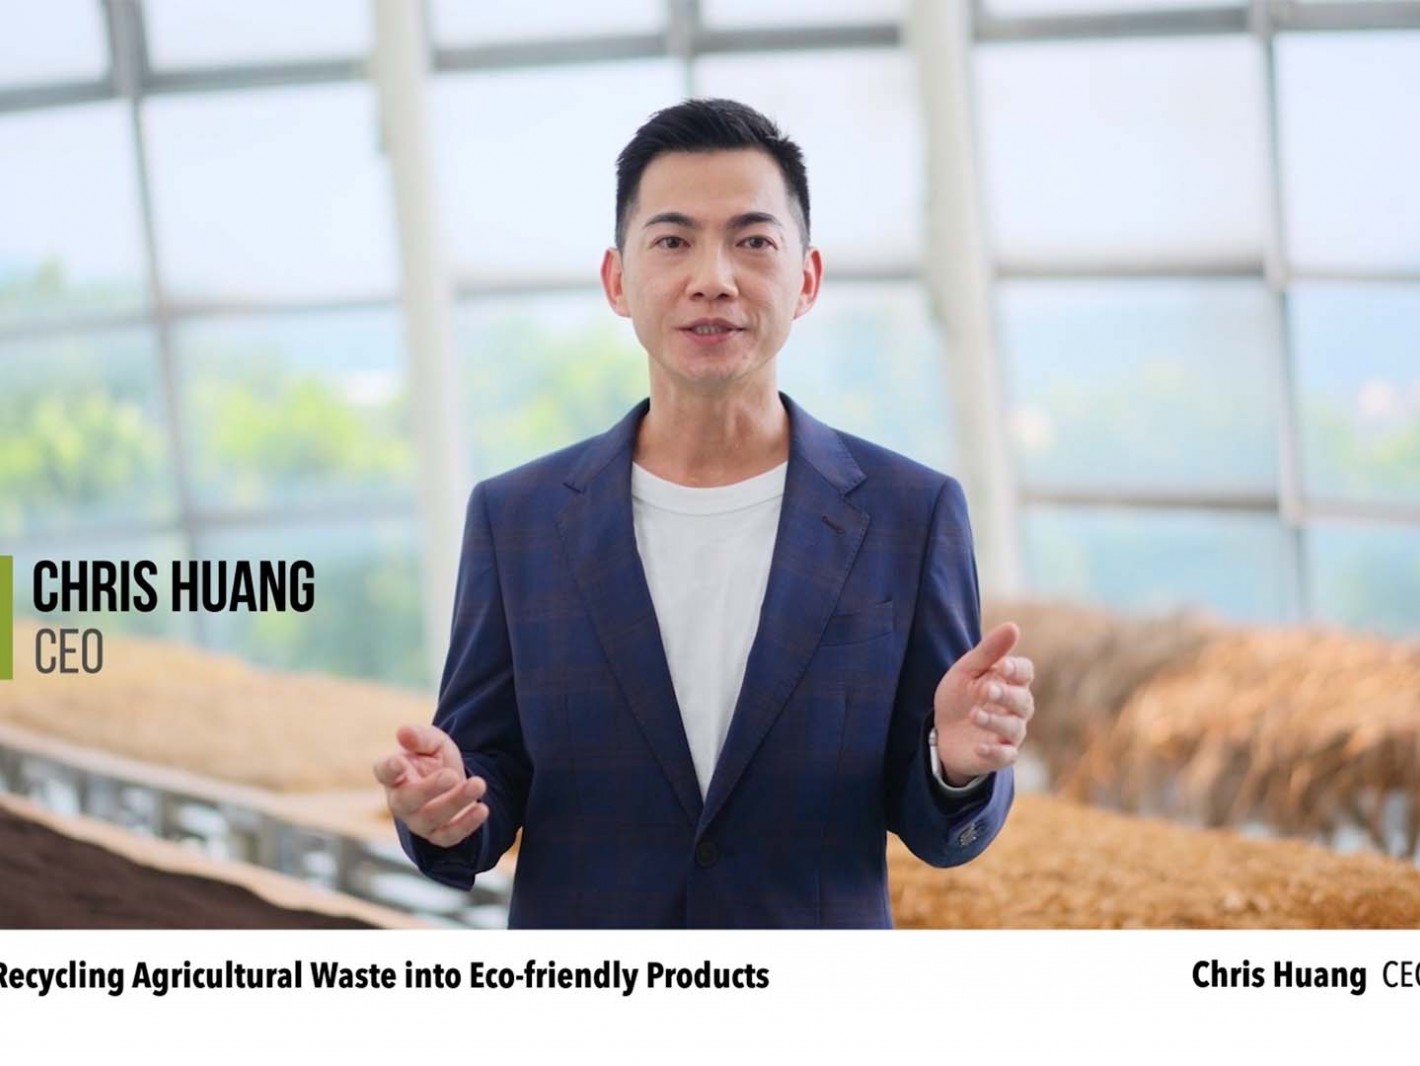 鉅田潔淨技術股份有限公司黃千鐘 Chris Huang執行長分享植物纖維餐具及植物纖維永續瓶